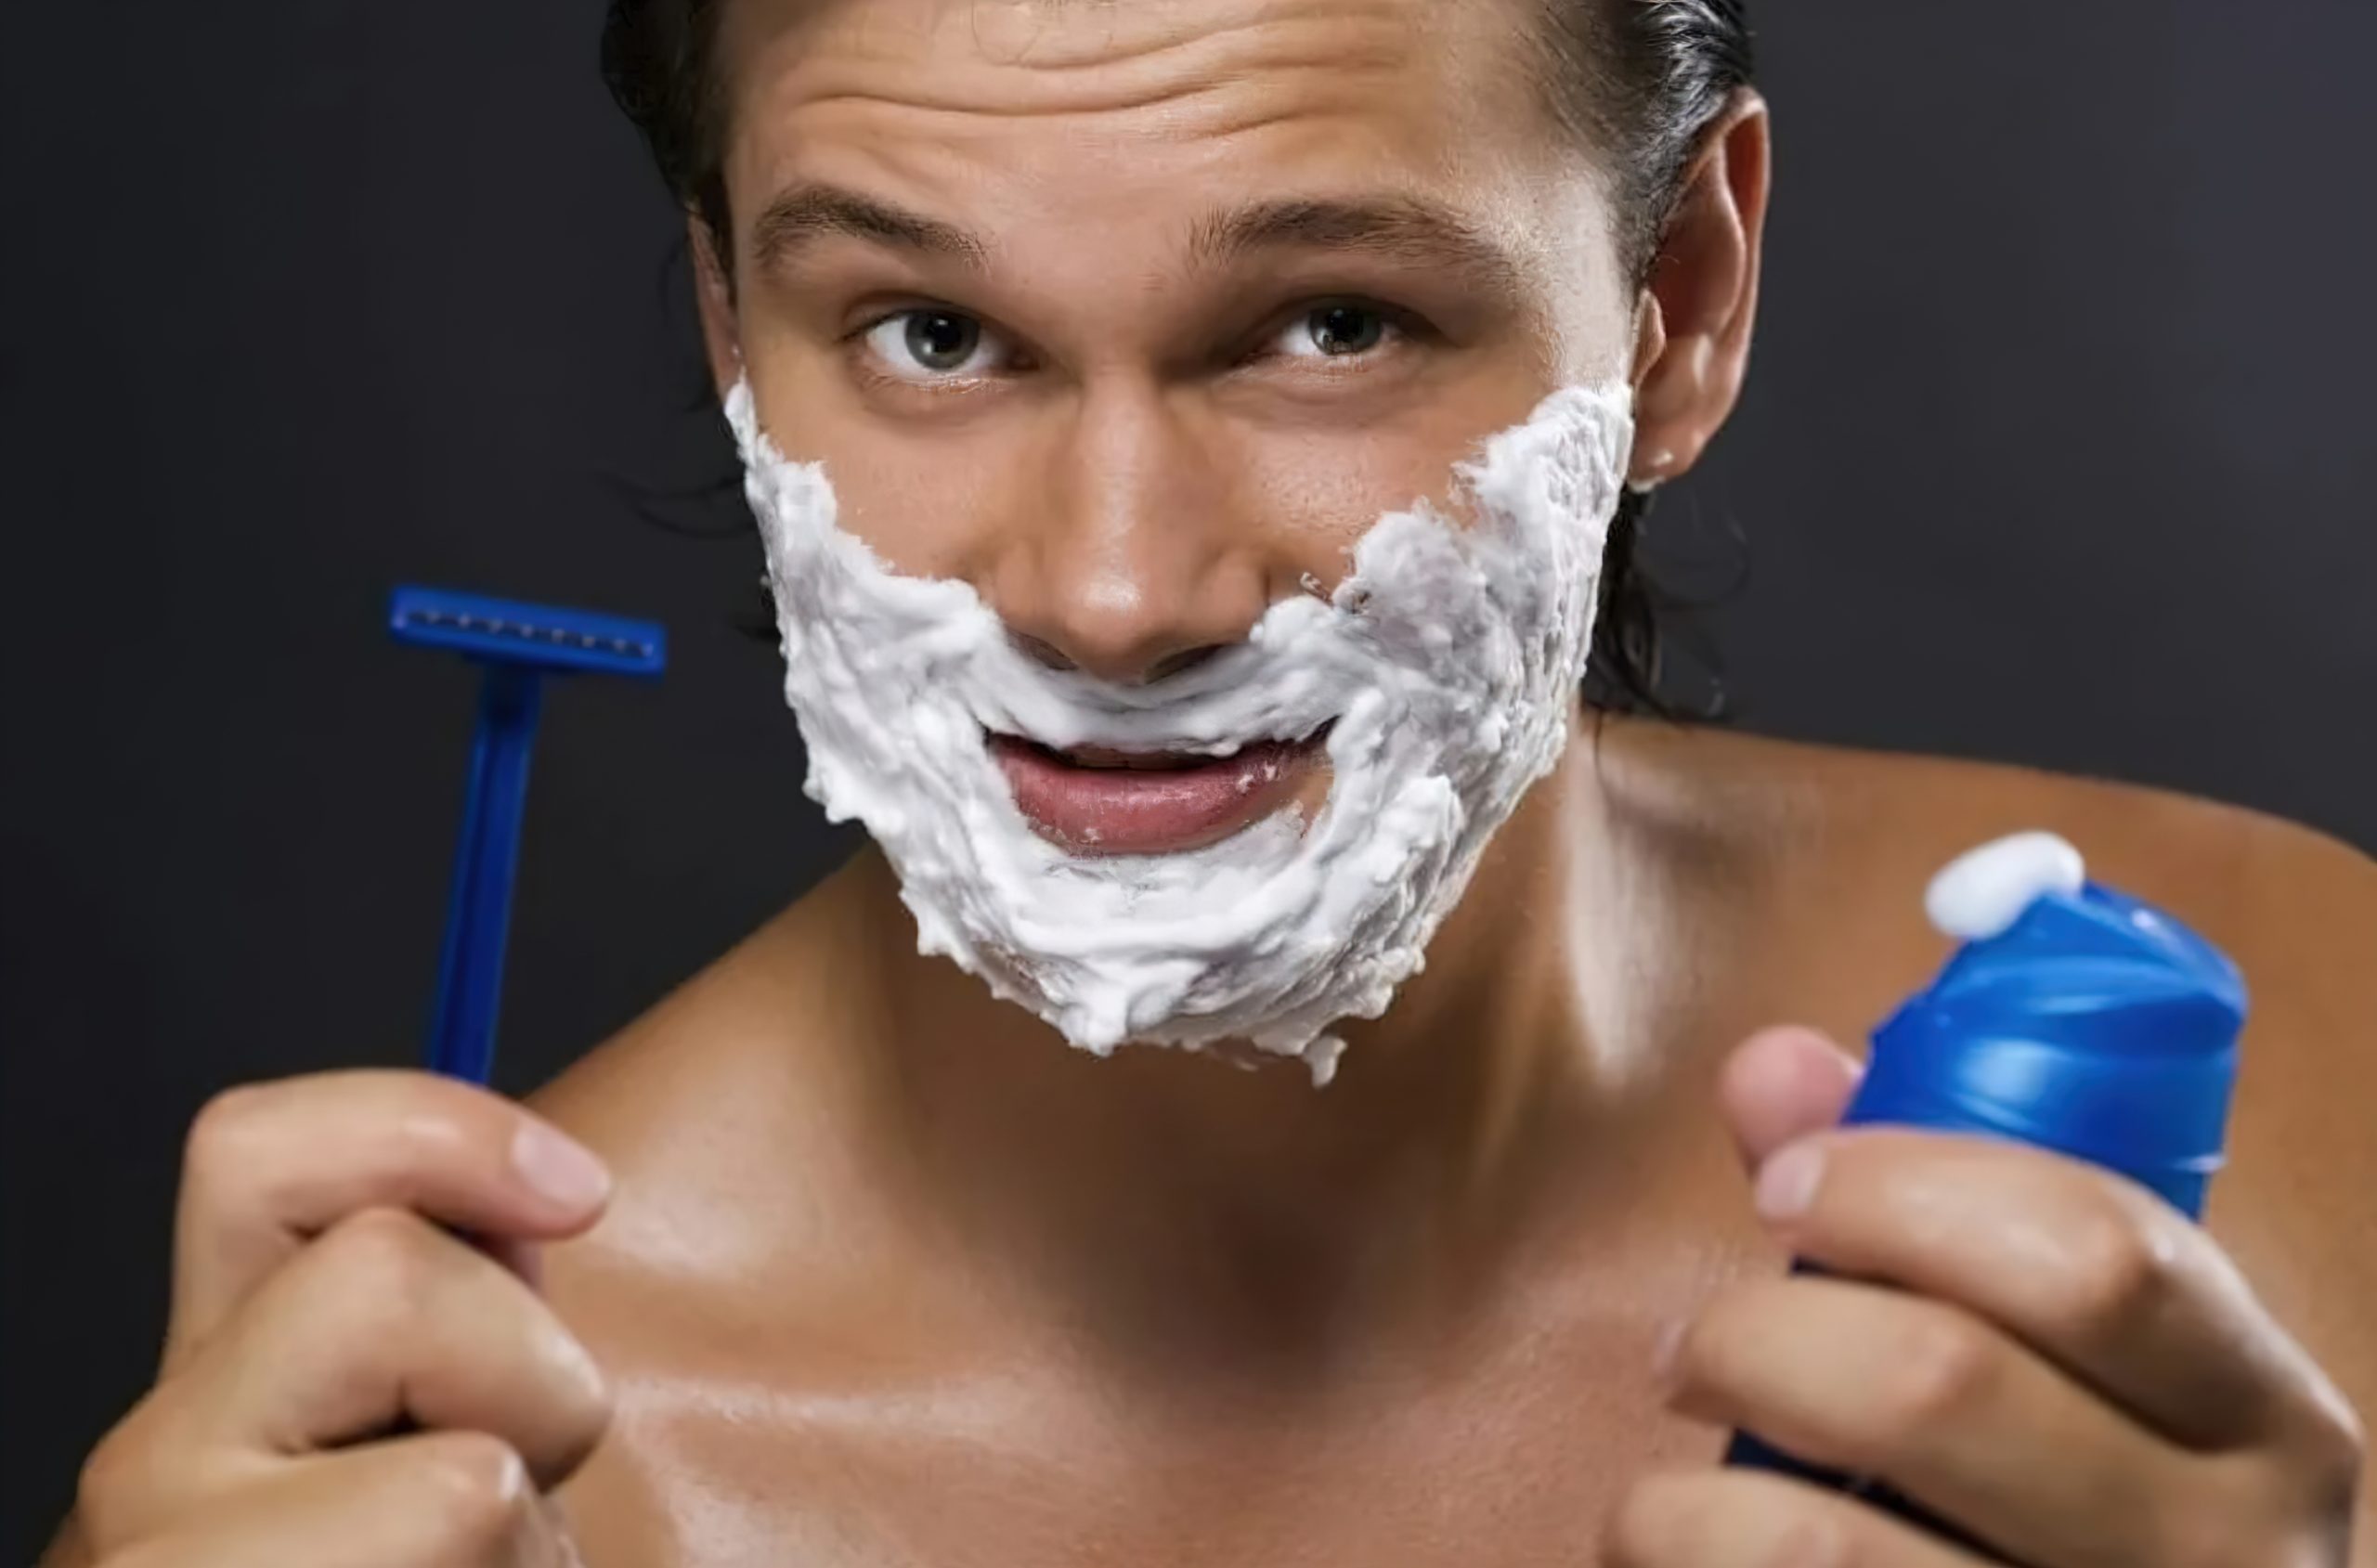 Немецко бритье. Мужчина бреется. Пена для бритья для мужчин. Реклама пены для бритья. Пена для бритья на лице.